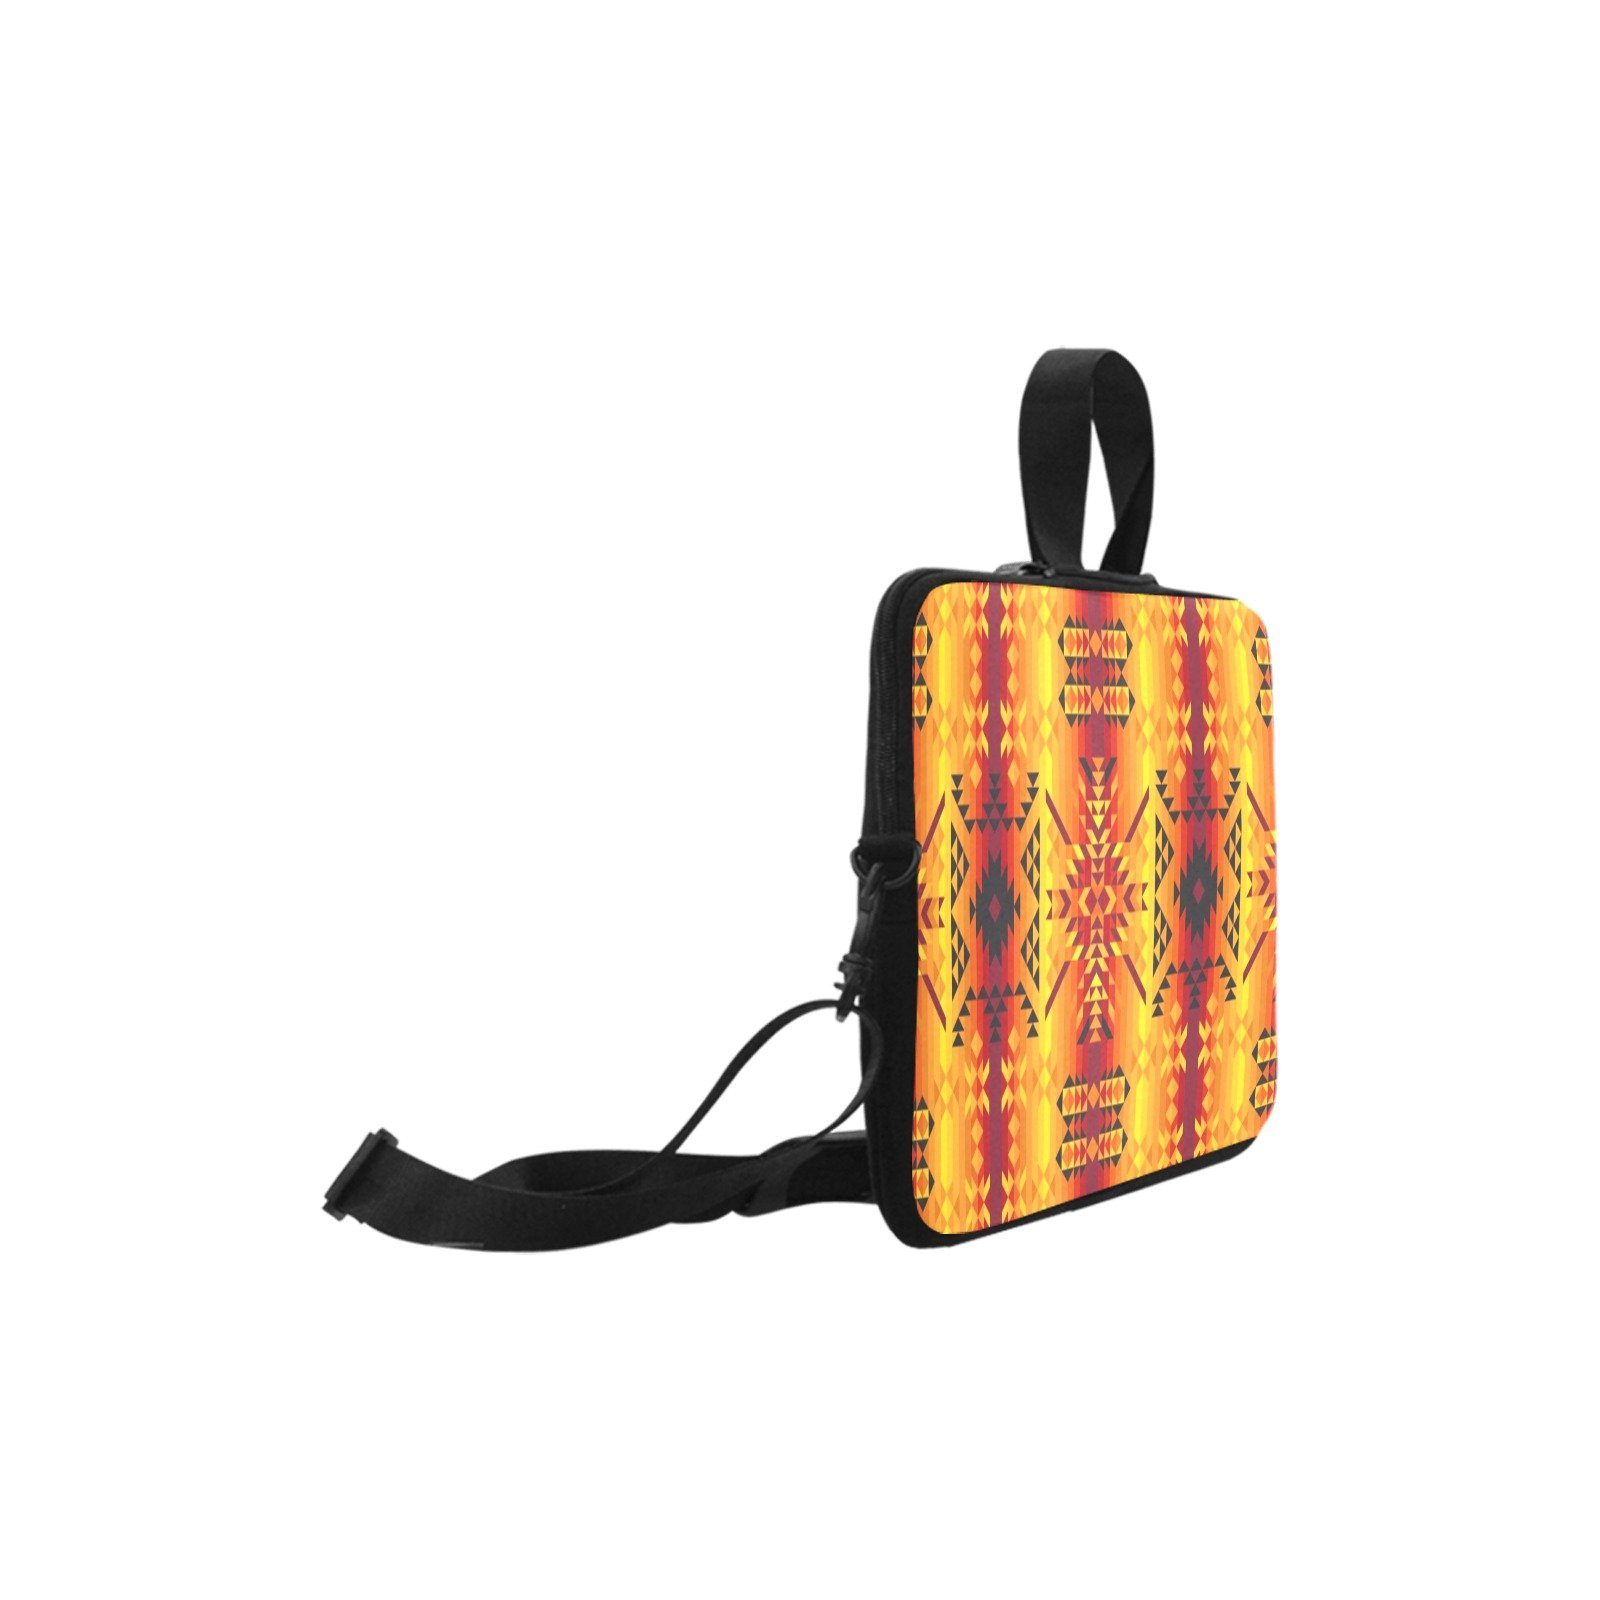 Desert Geo Yellow Red Laptop Handbags 10" bag e-joyer 